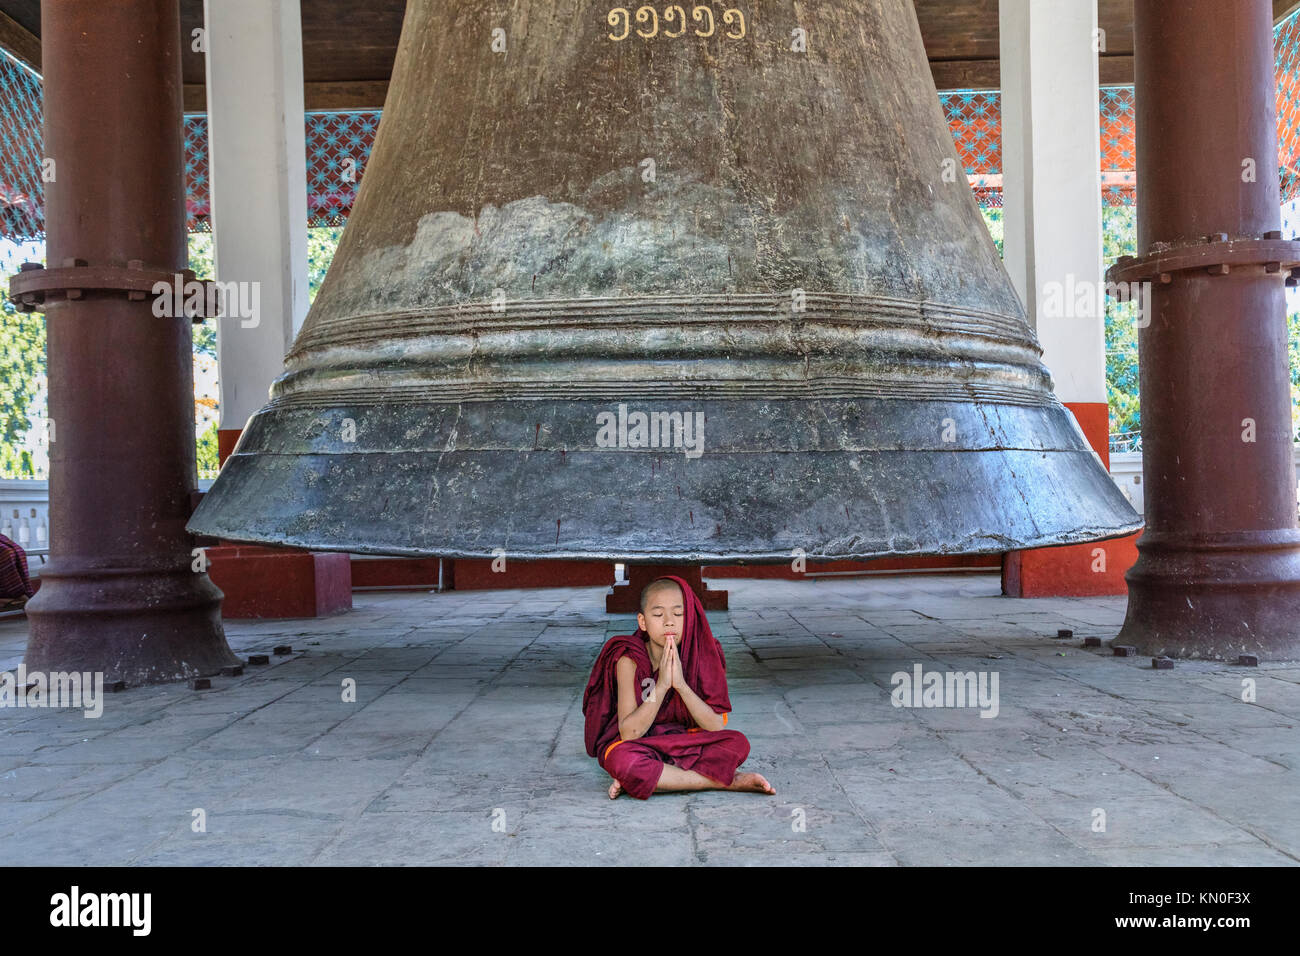 Mingun Bell, Mandalay, Myanmar, Asia Stock Photo